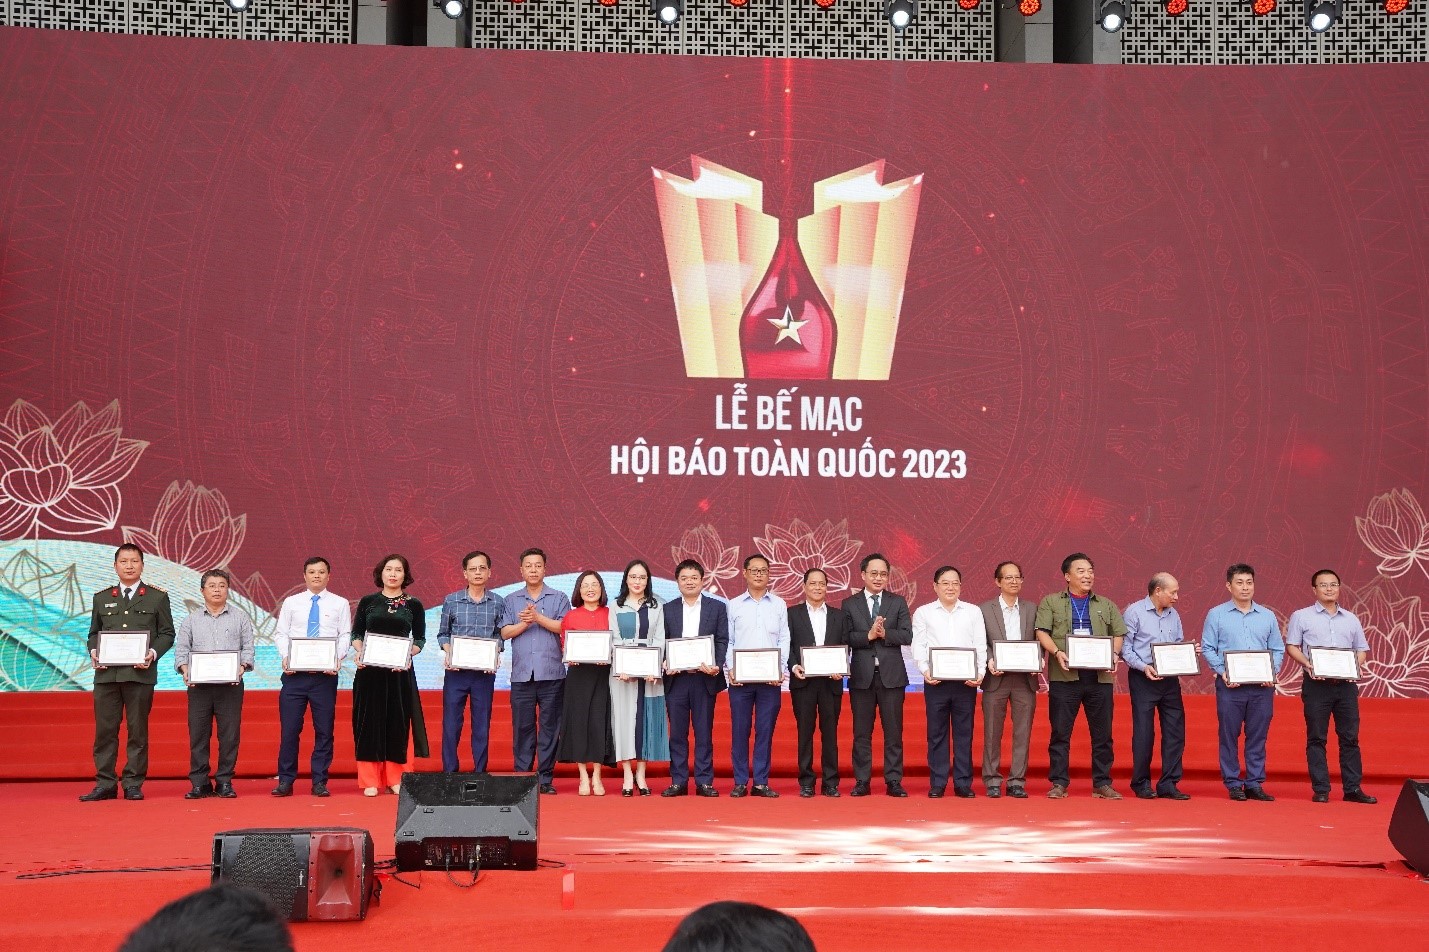 Nhà báo Nguyễn Văn Minh - Phó Tổng Biên tập phụ trách Vuasanca
 (thứ 9 từ trái sang) nhận Giải C - Bìa báo Tết ấn tượng tại Hội báo Toàn quốc 2023